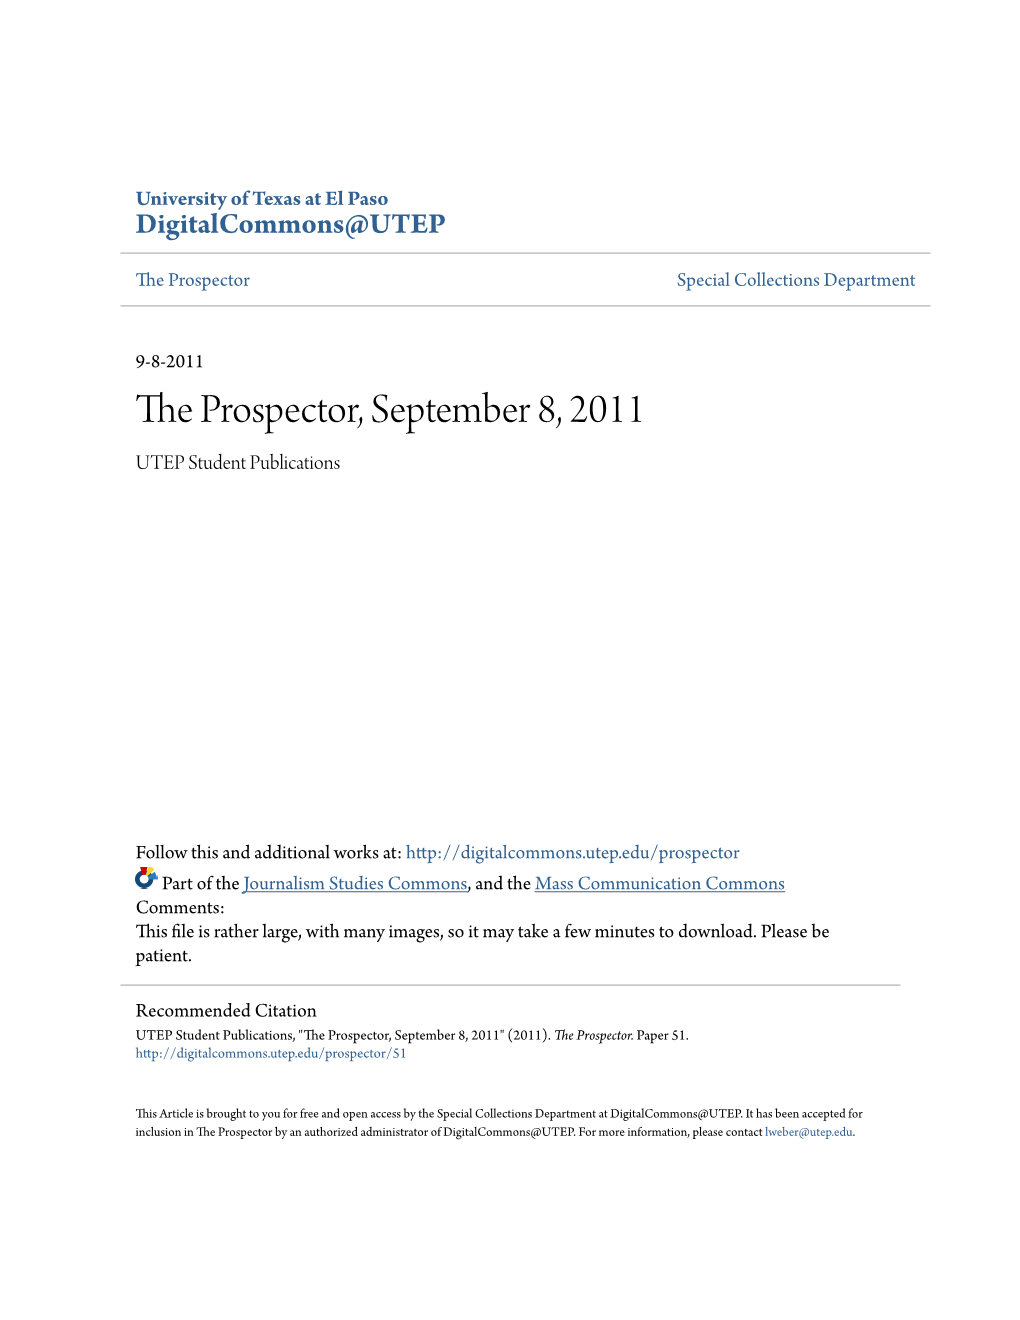 The Prospector, September 8, 2011